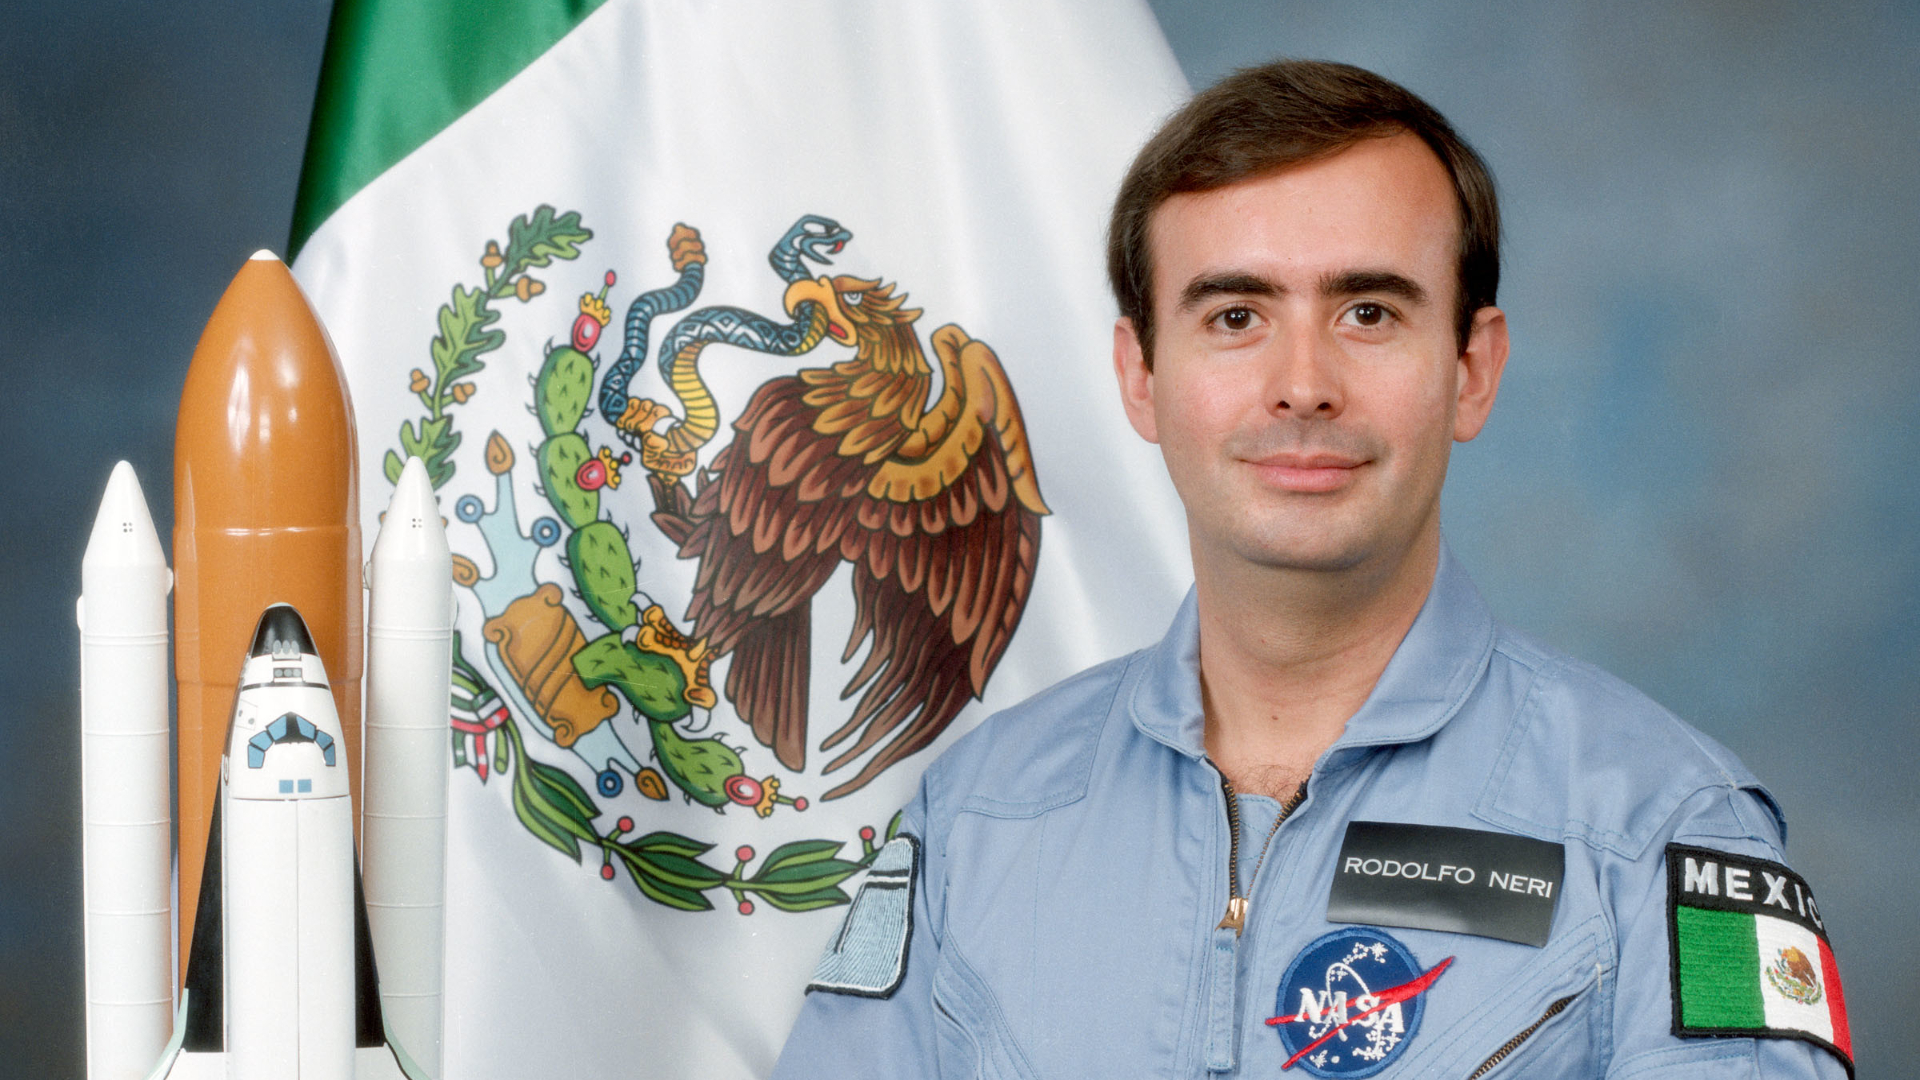 En 1985 el Dr. Rodolfo Neri Vela viajó al espacio (Foto: Flickr)